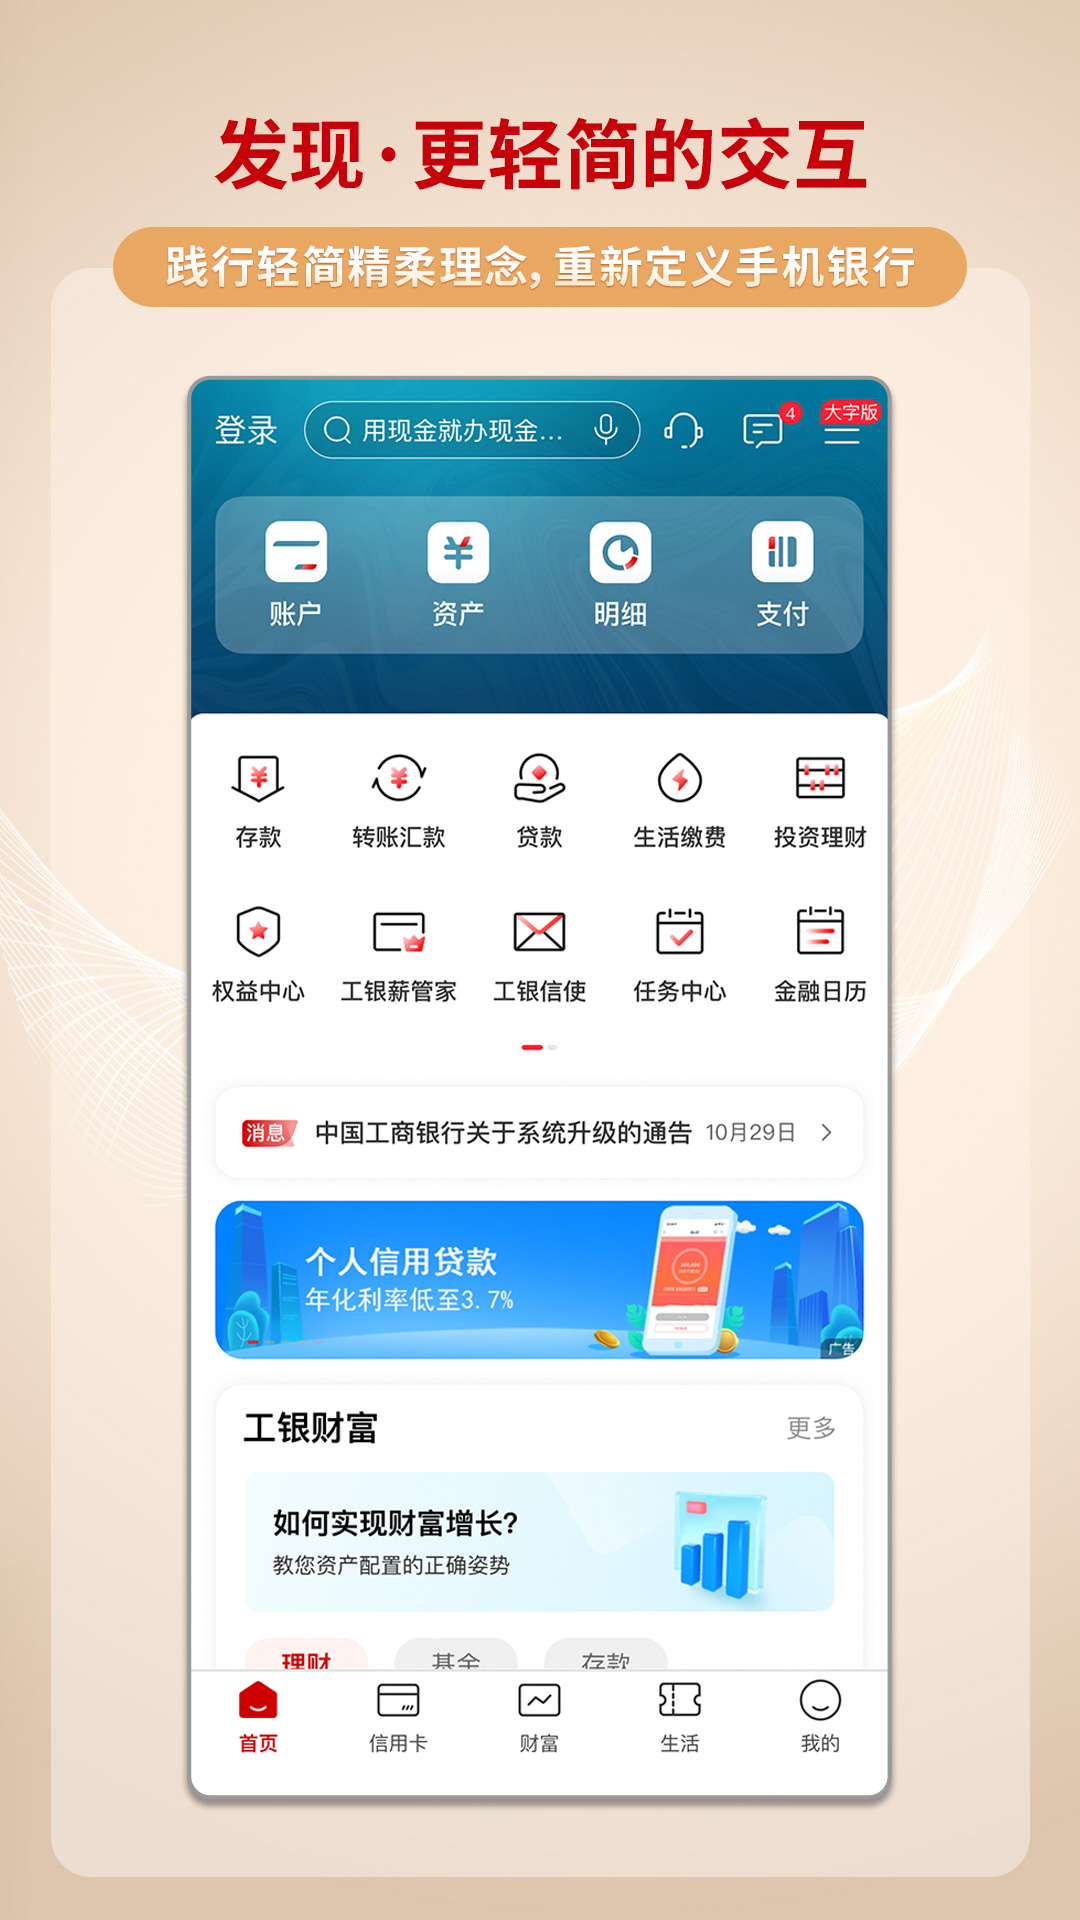 中国工商银行苹果版v8.0.1.2.1 官方版